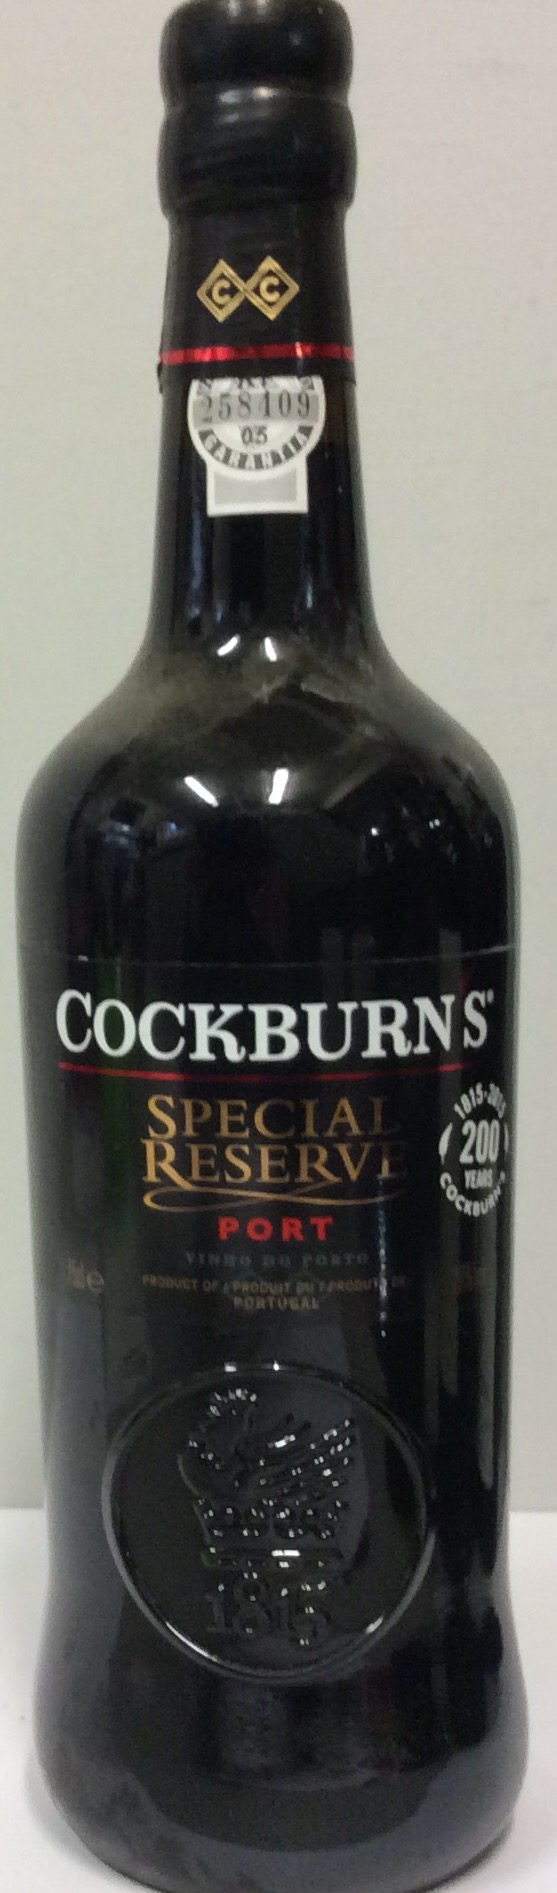 COCKBURN'S, A BOTTLE OF 2015 VINTAGE PORT Having a black seal cap and the label reading 'Cockburn'